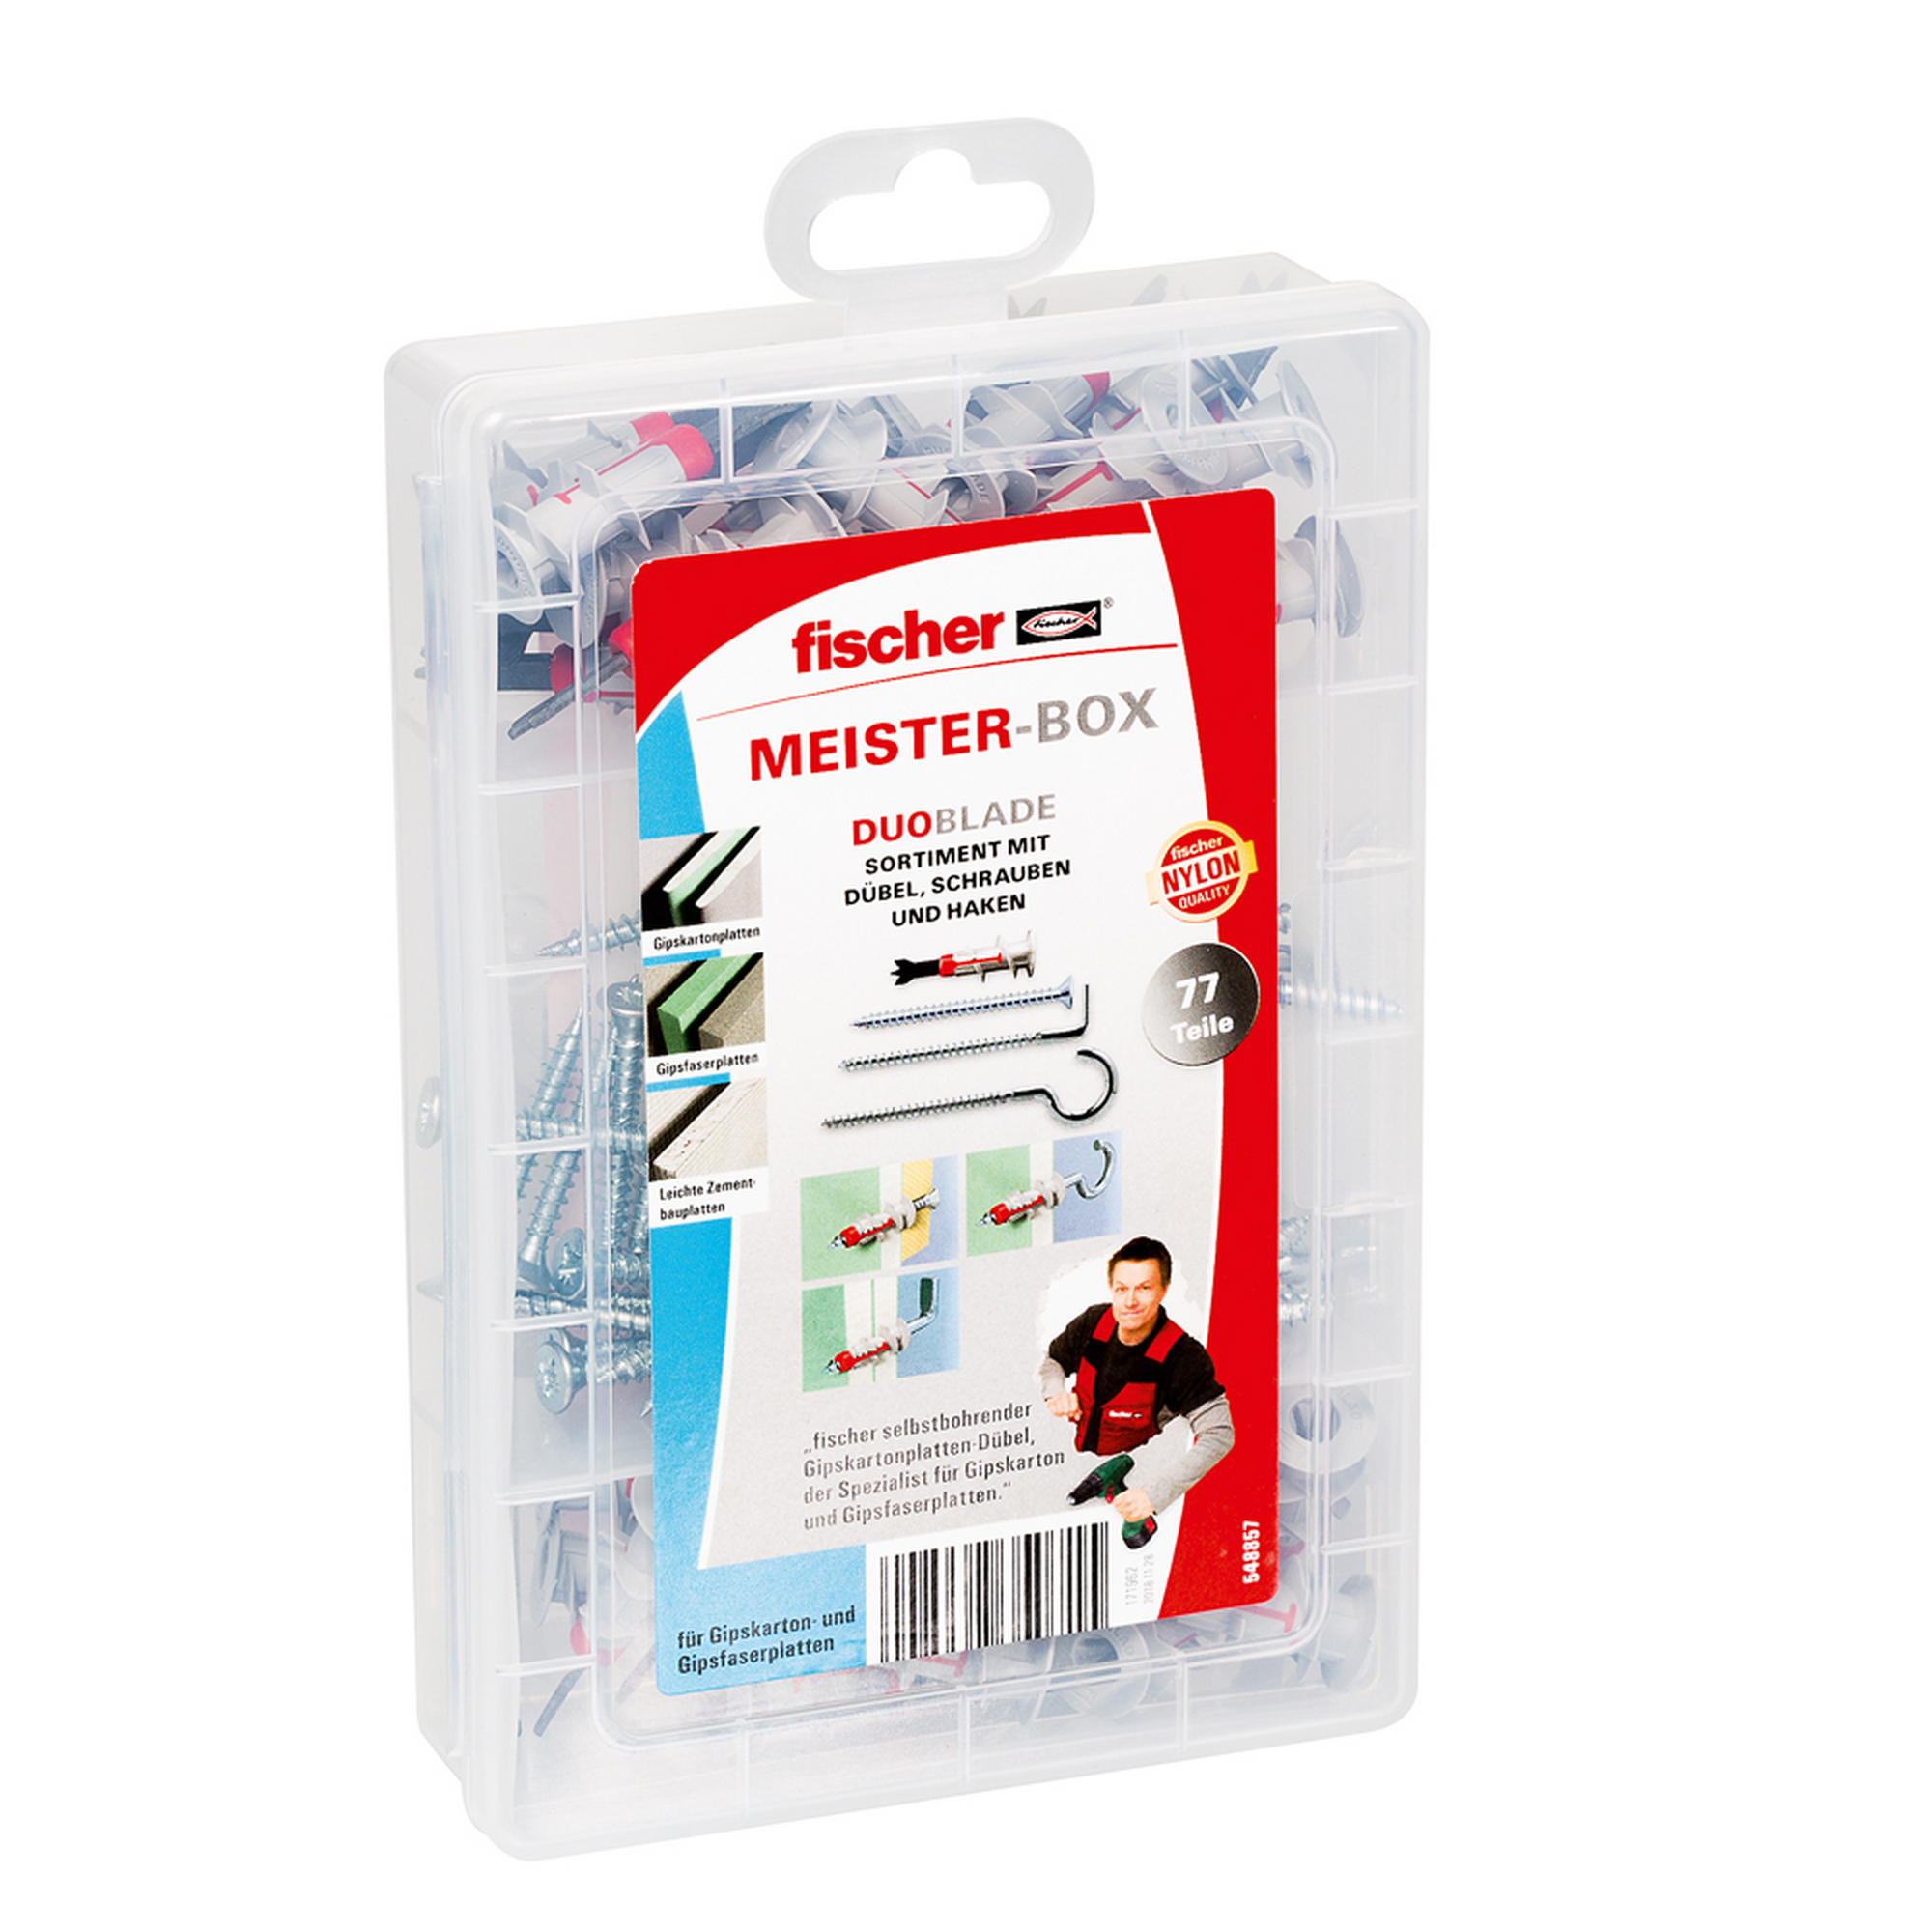 Meister-Box 'Duoblade' Dübel, Schrauben und Haken 77-teilig + product picture